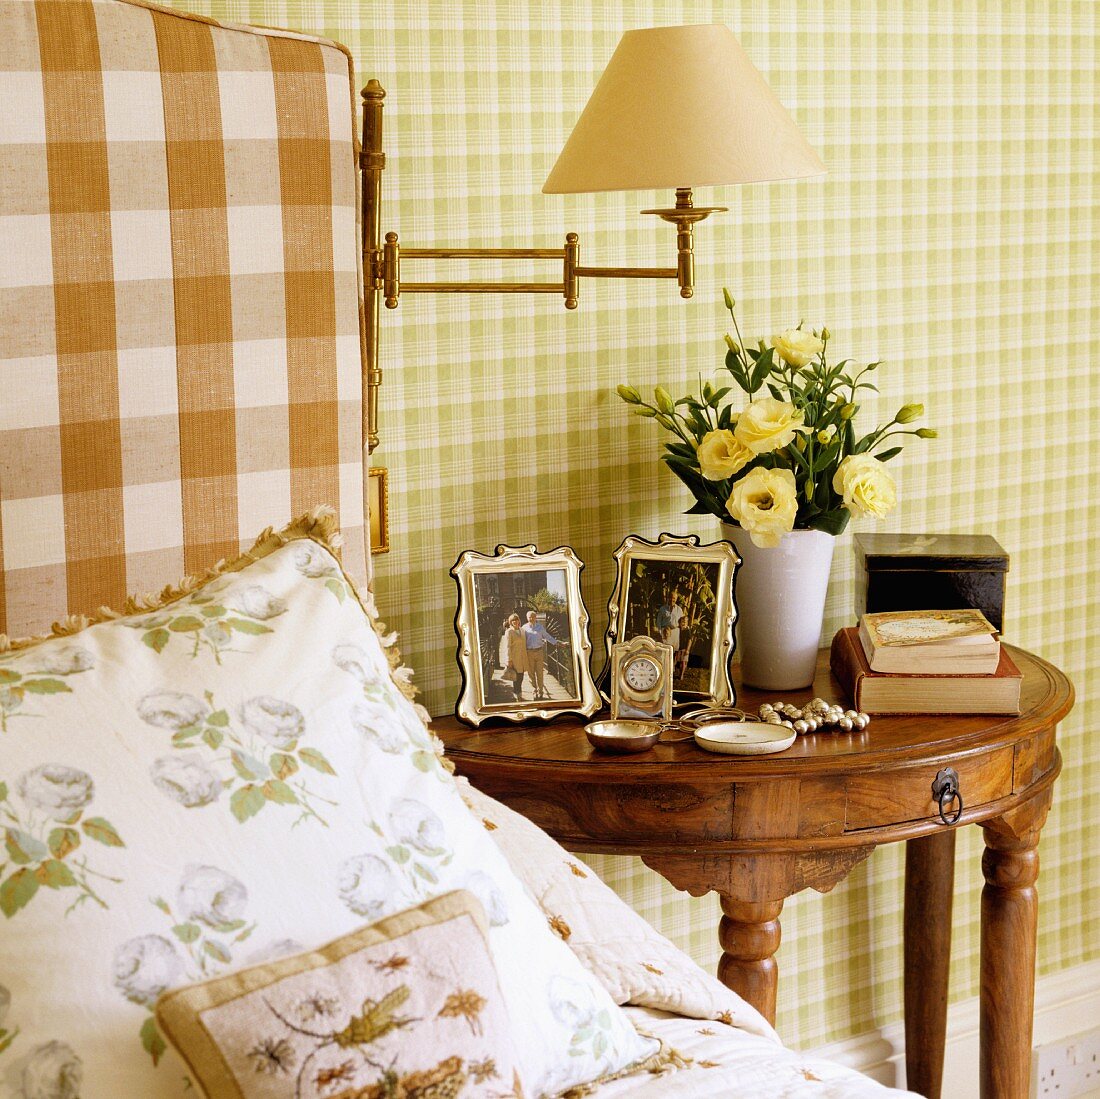 Kissen auf Bett neben antikem, halbkreisförmigen Nachttisch aus Edelholz vor Wand mit grüner Karo-Tapete